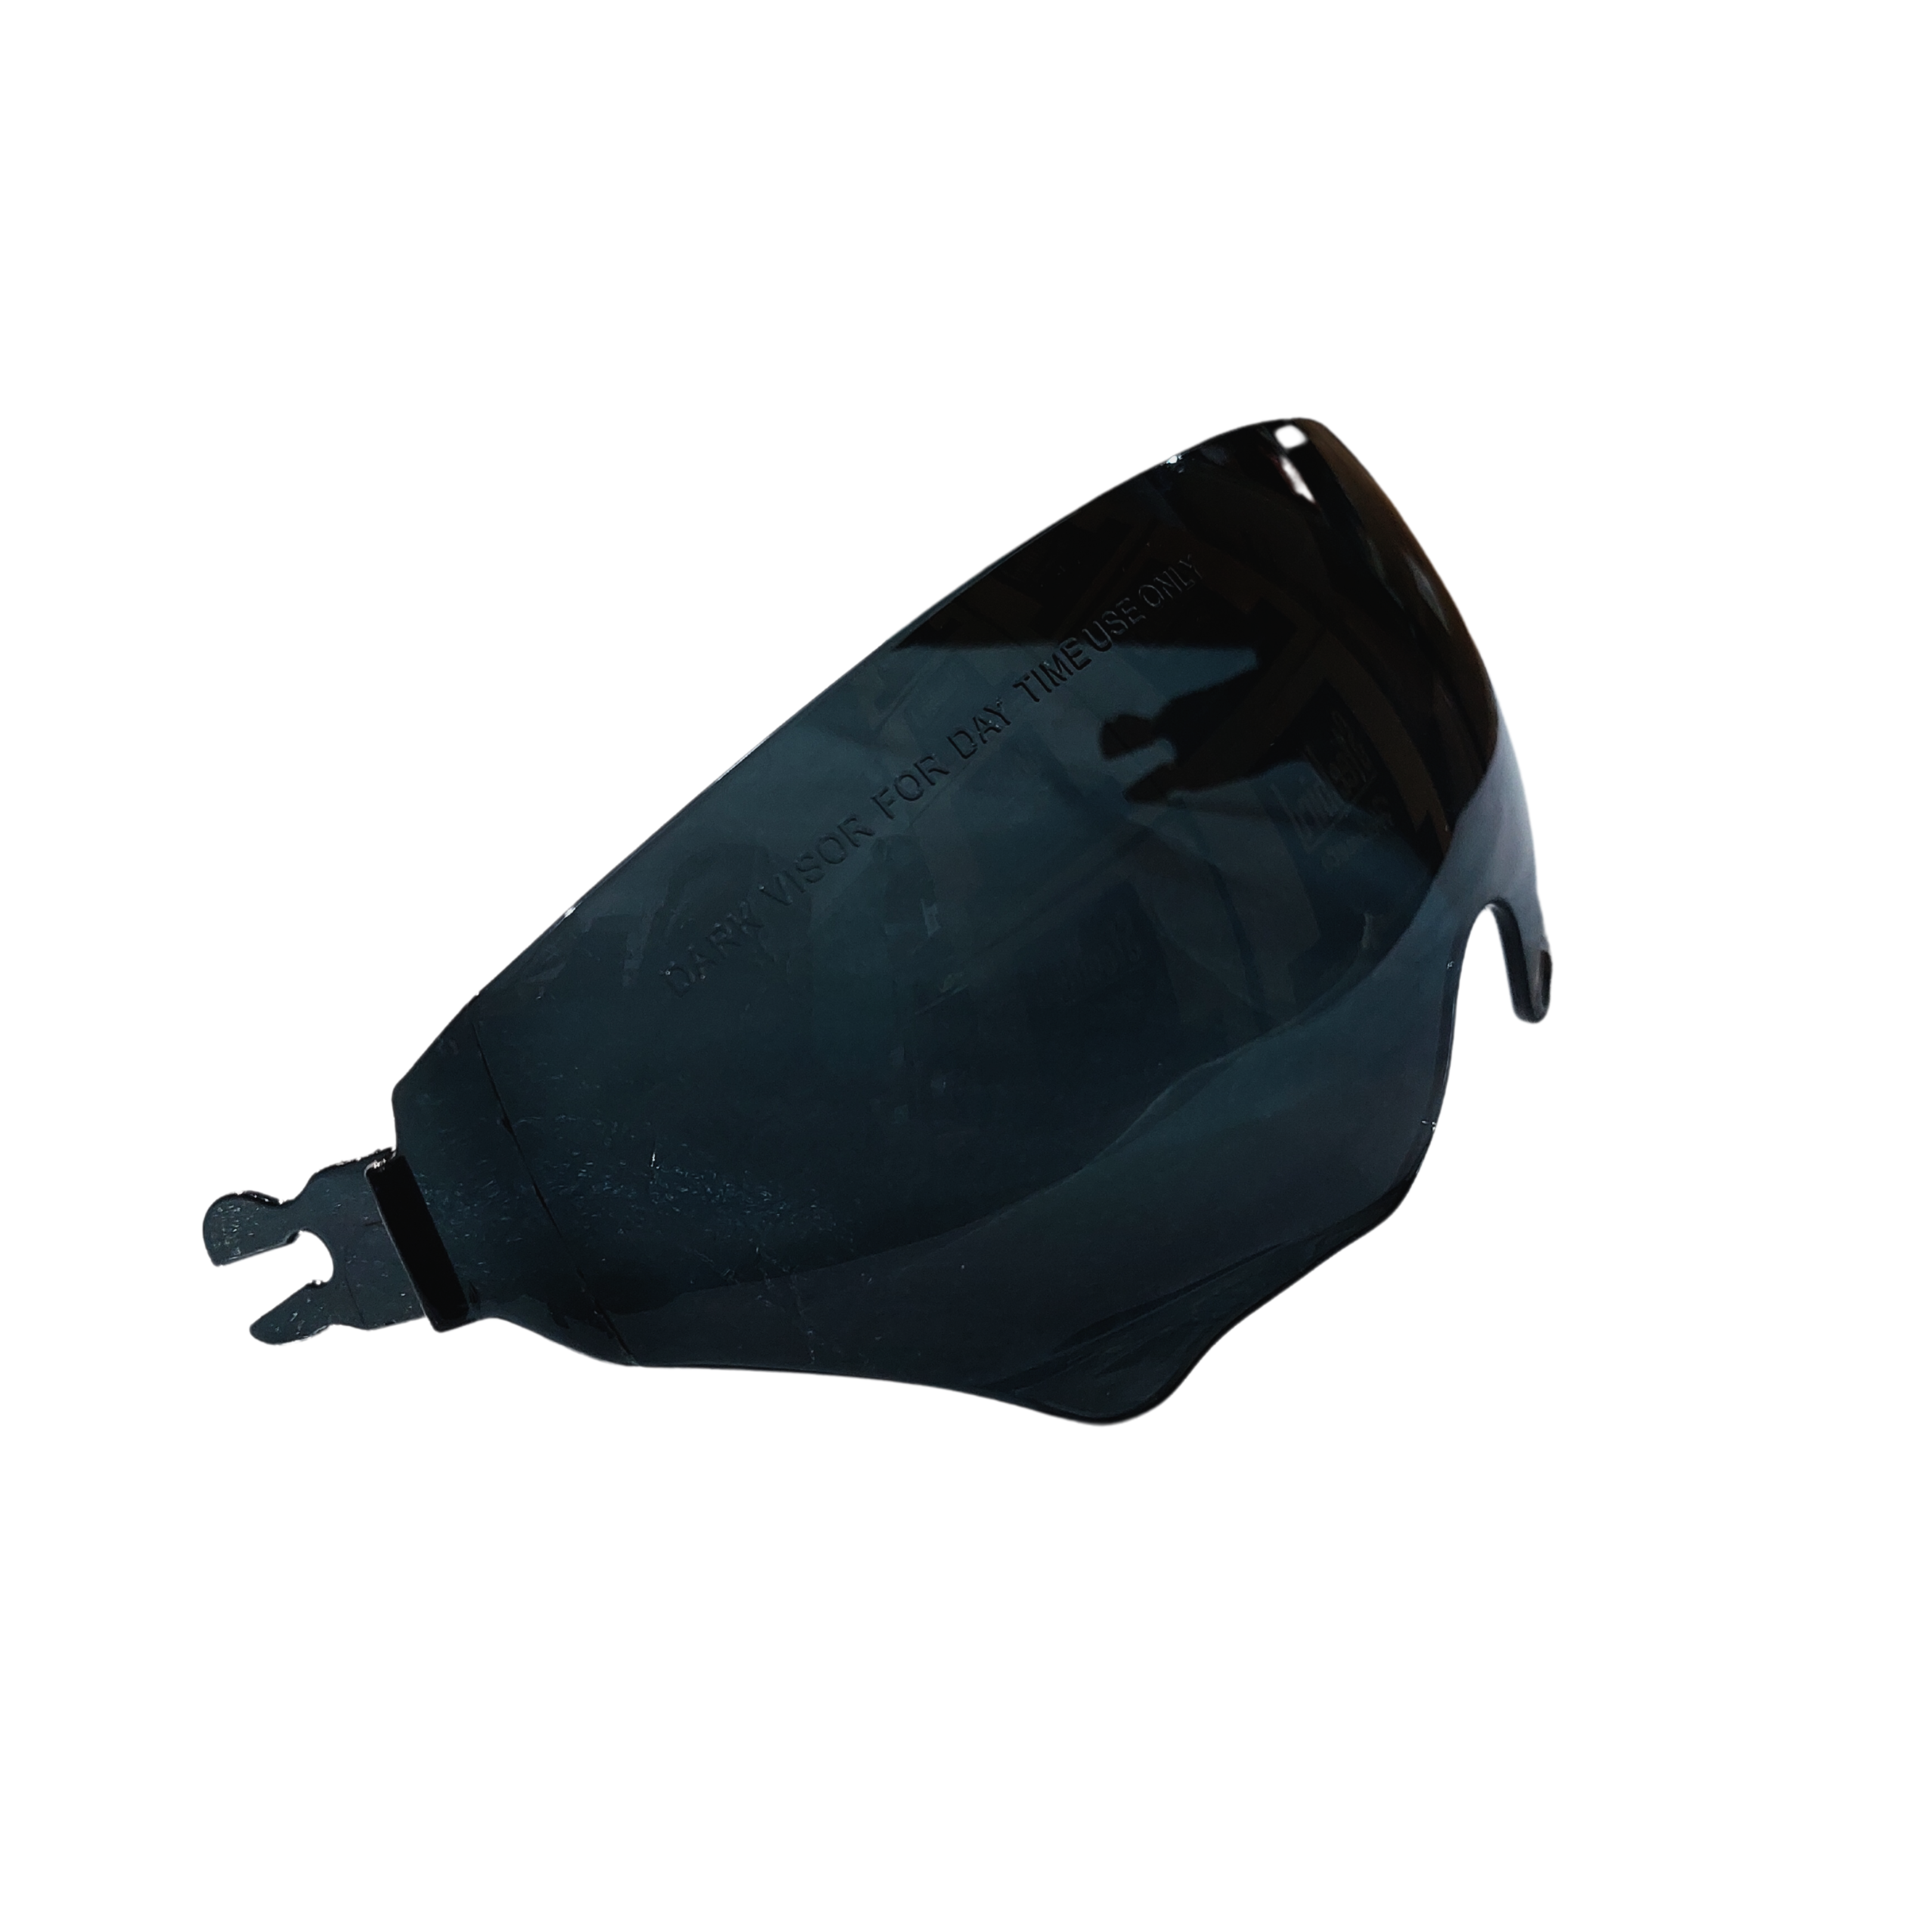 SBA7 & Headfox Air Smoke Black Inner Helmet Visor or inner goggle